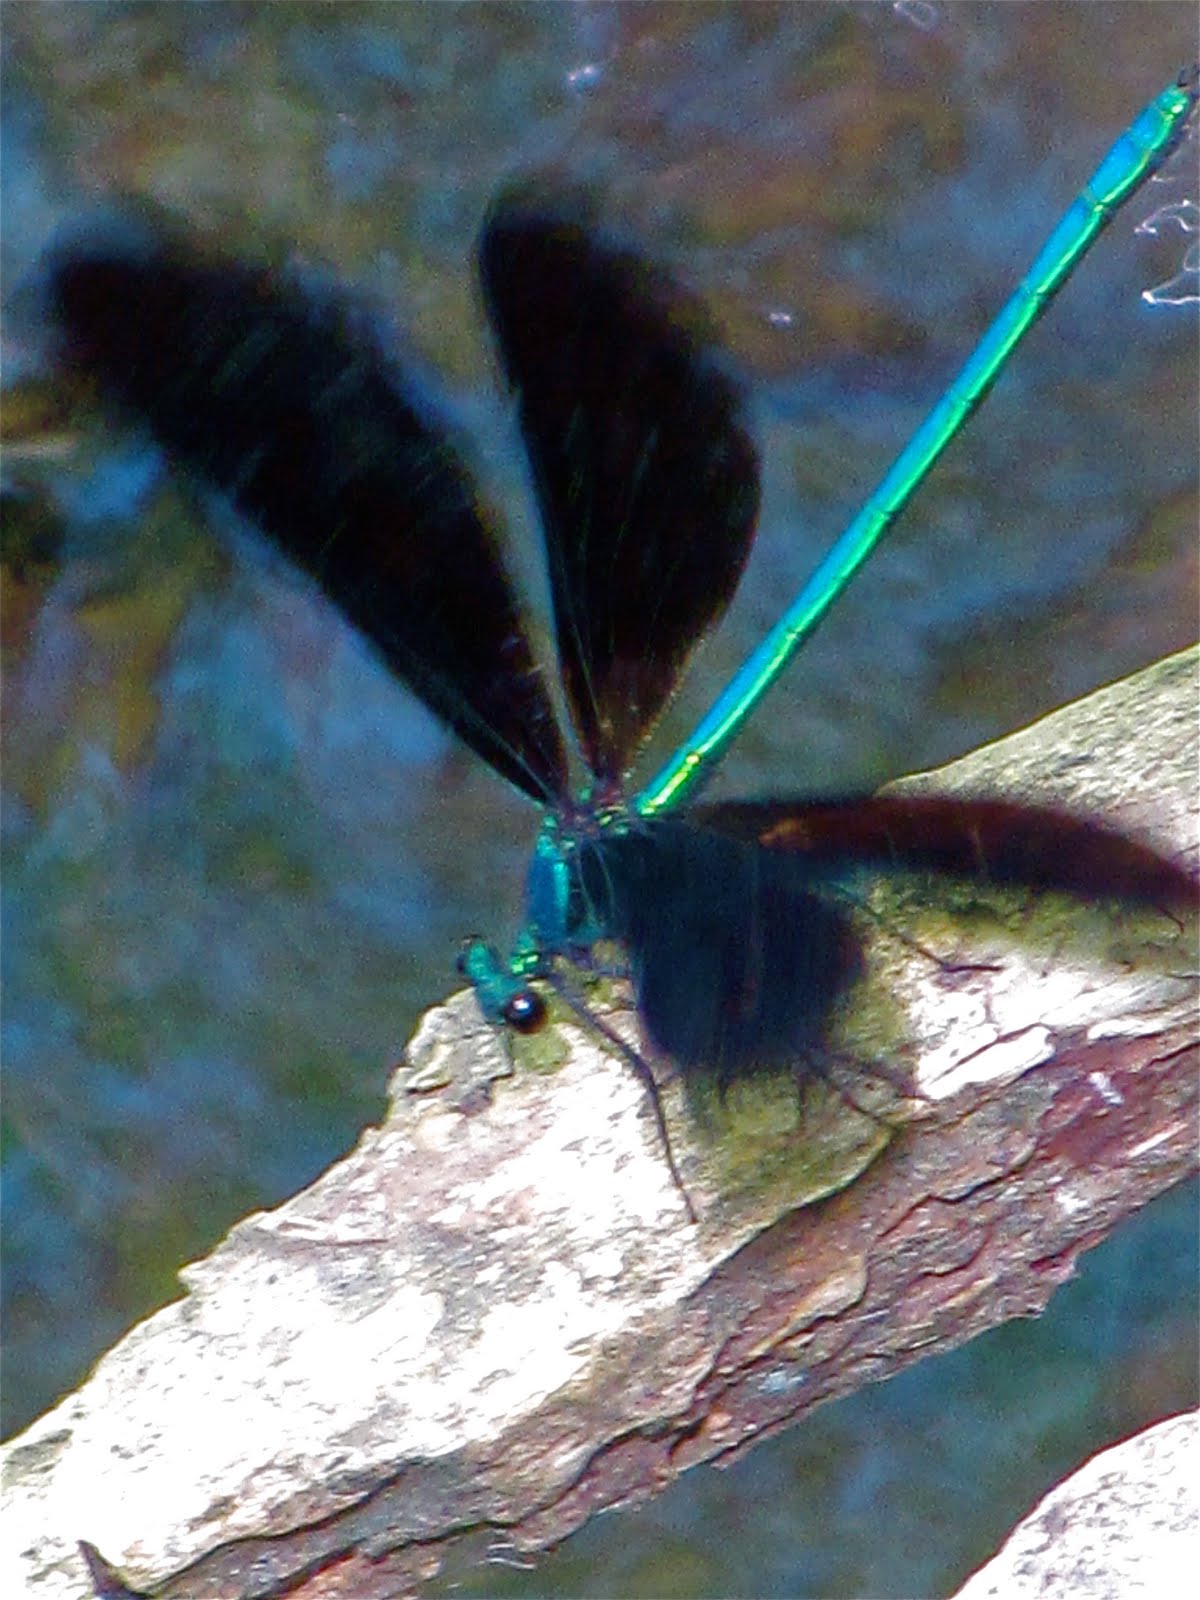 Dragonflies+mating+robert+hass